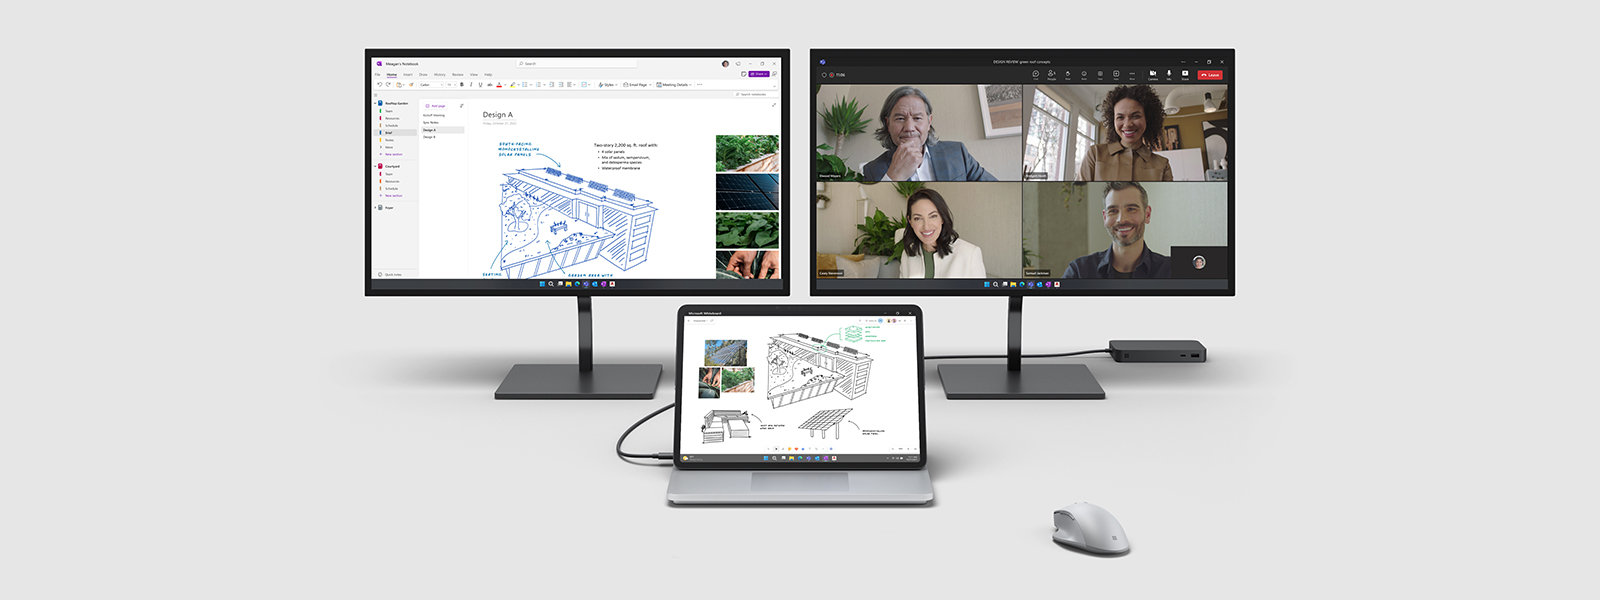 ภาพของ Surface Laptop Studio 2 ที่เชื่อมต่อกับสองจอภาพภายนอกพร้อมแอปพลิเคชันต่าง ๆ ของ Microsoft บนหน้าจอ